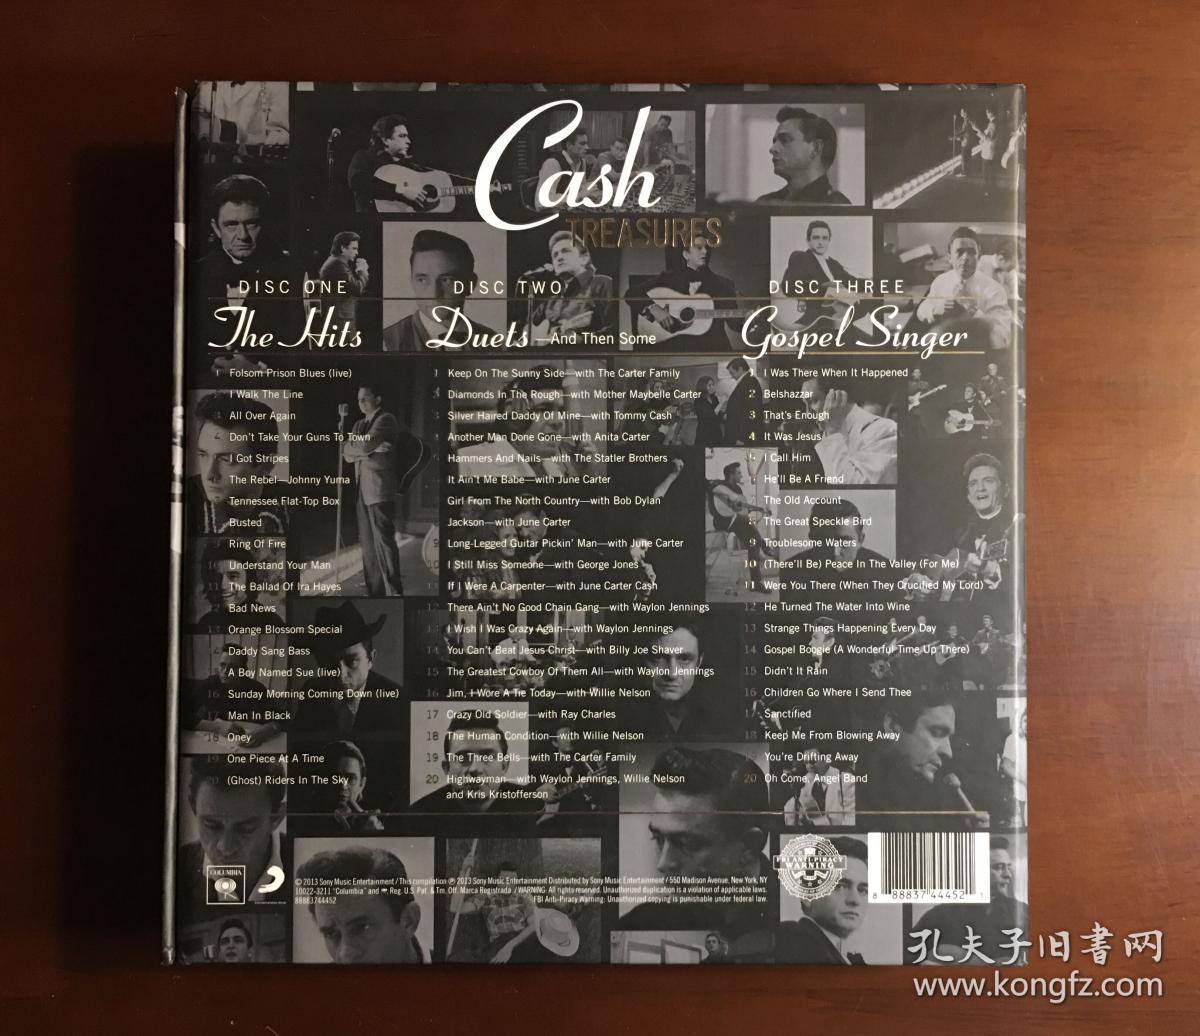 美国乡村音乐Johnny cash  TREASU  RES 经典套盒。3CD .黑面。高保真音质！
2013年索尼公司出品！
全新原版进口CD 假一赔十